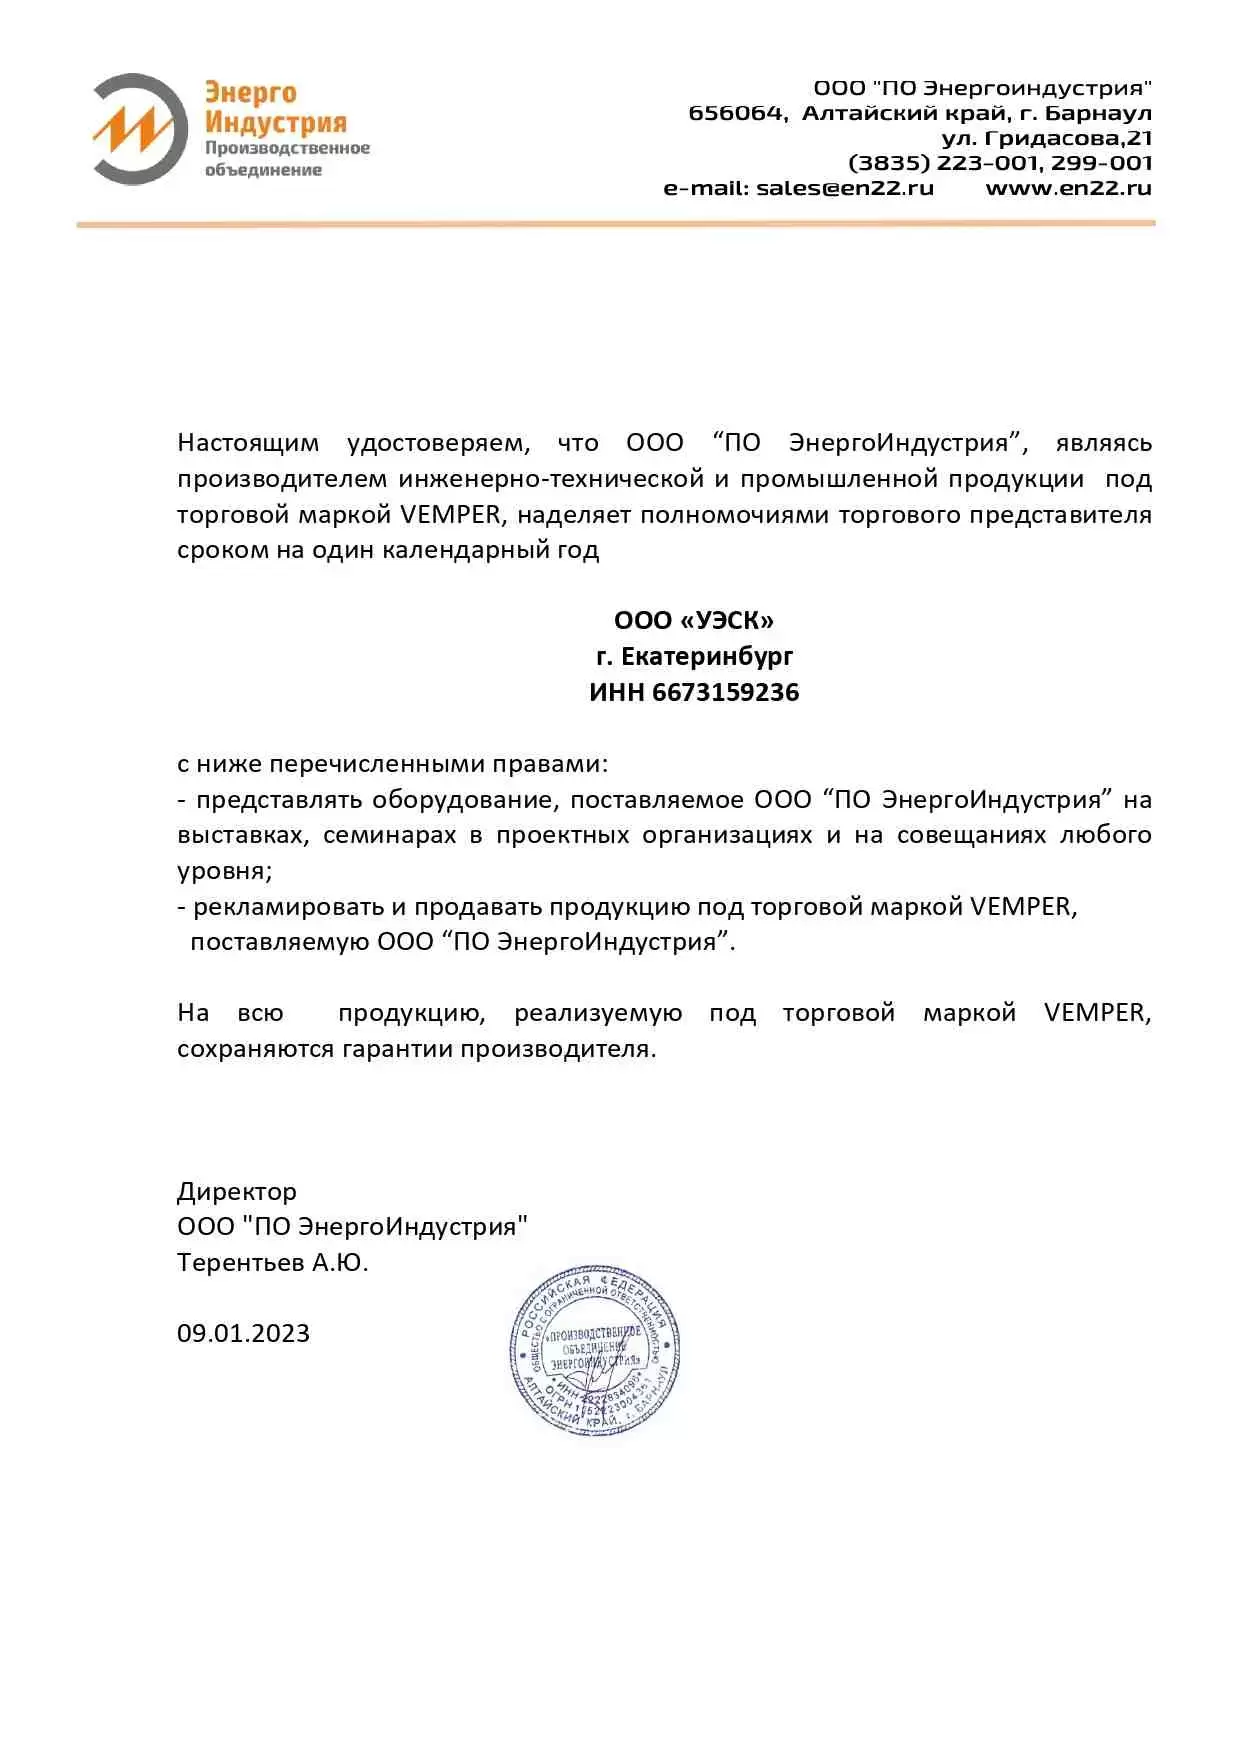 Сертификат официального представителя Vemper